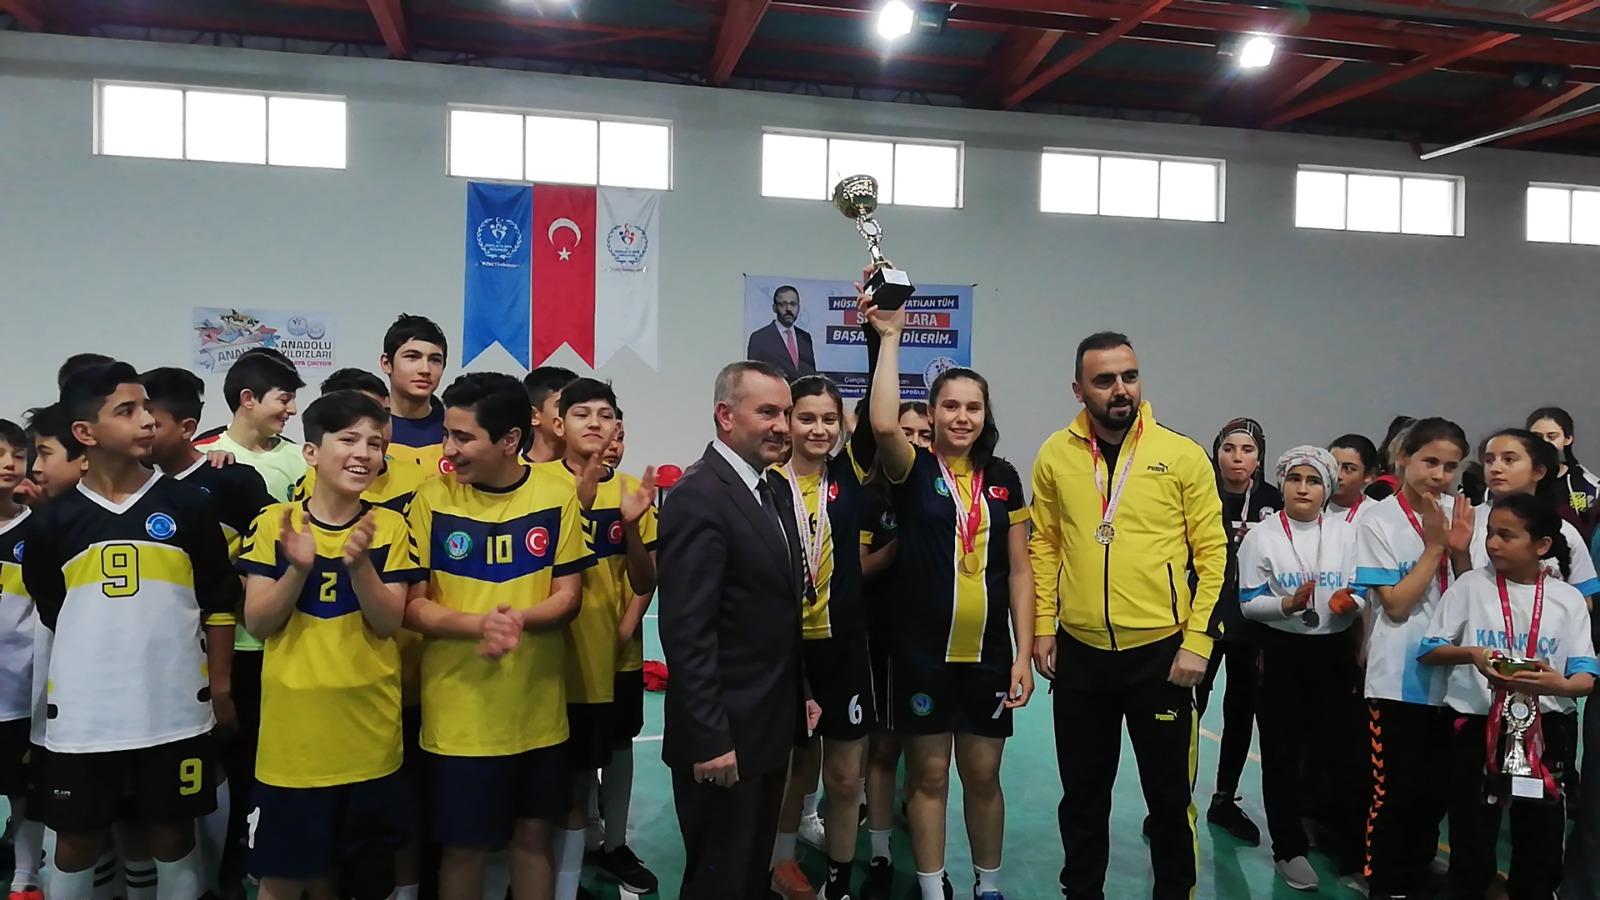 Kale okulundan 5 yıldızlı şampiyonluk - Kırıkkale Haber, Son Dakika Kırıkkale Haberleri